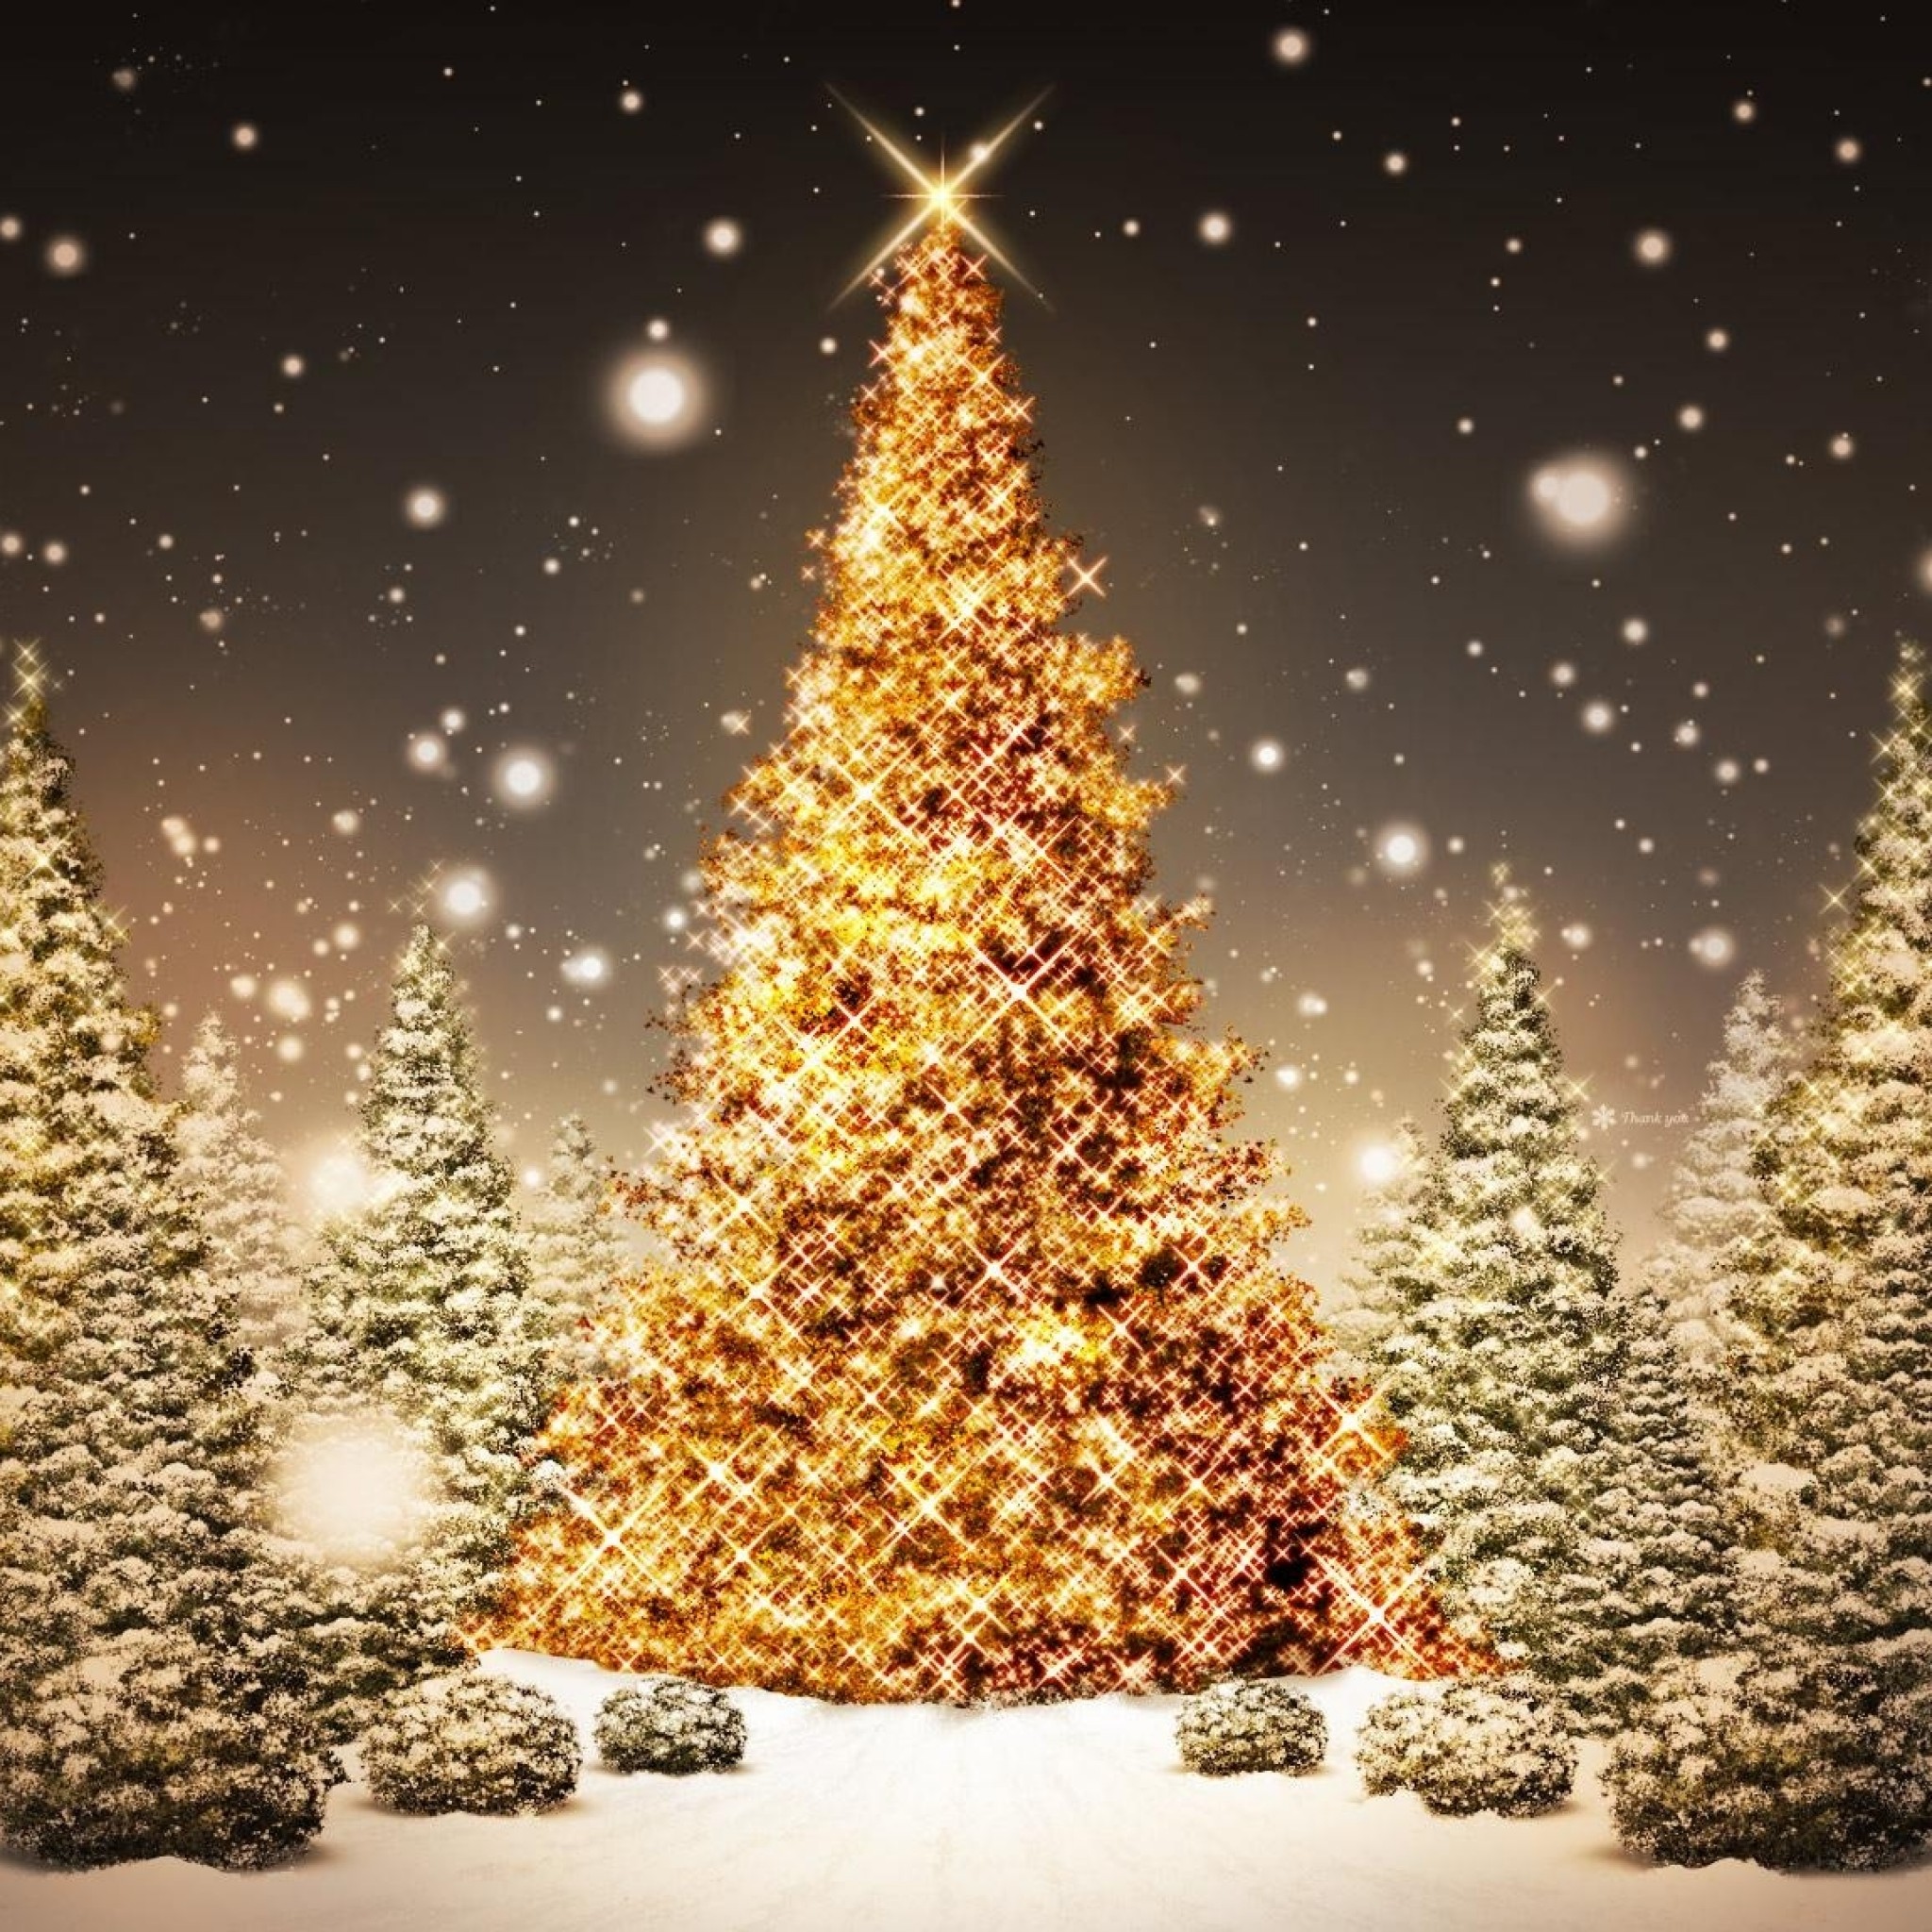 クリスマスipad壁紙,クリスマスツリー,クリスマスの飾り,木,クリスマスのあかり,クリスマス・イブ